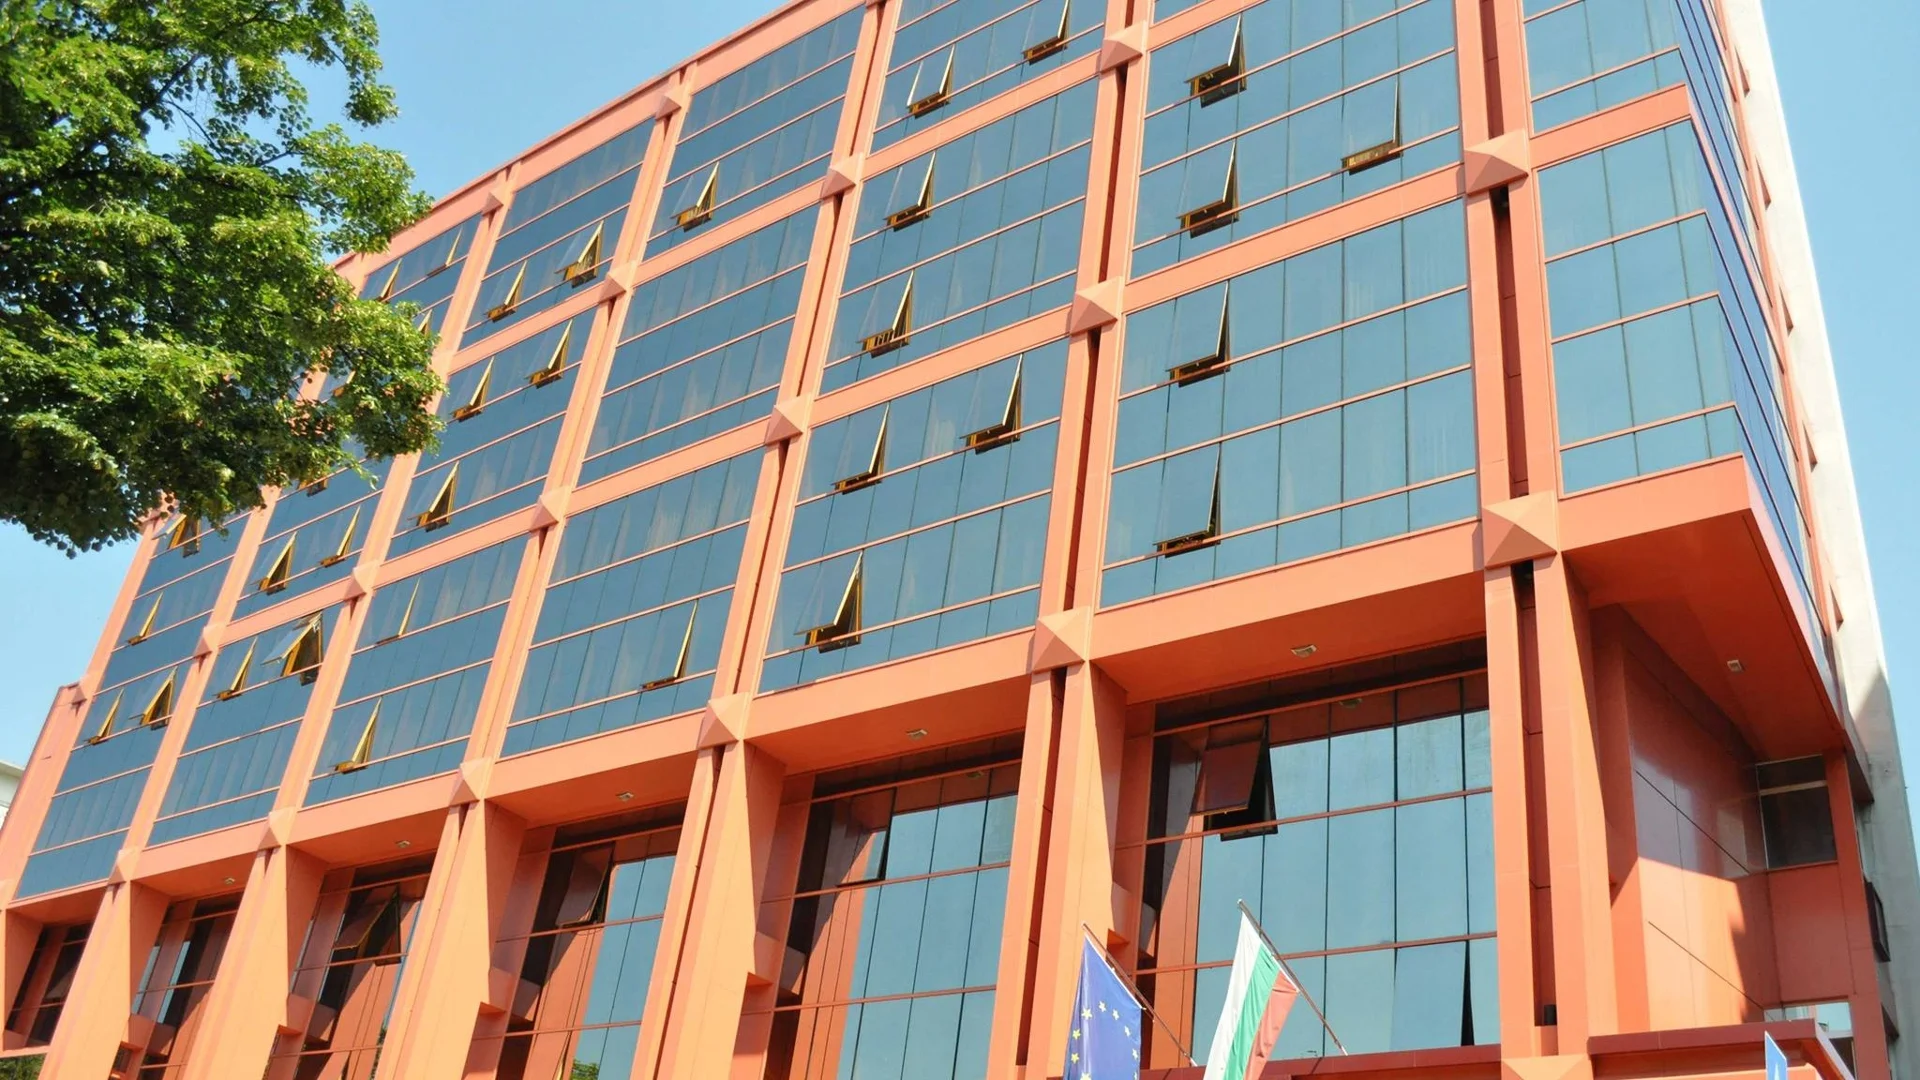 Сметната палата даде две министерства и 34 общини на АДФИ